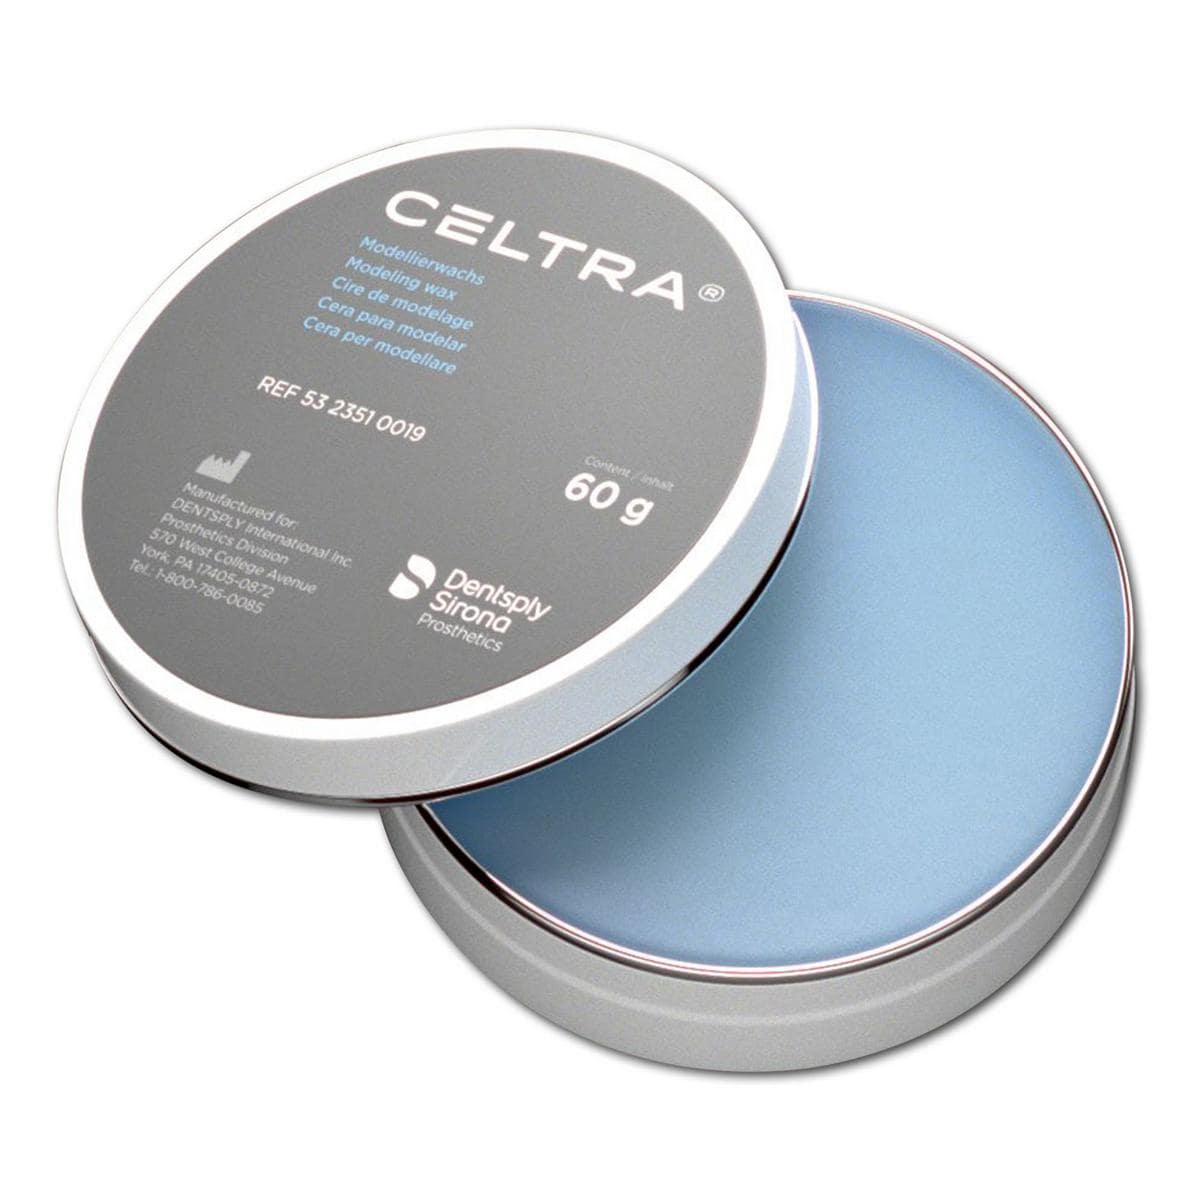 CELTRA® Modellierwachs - Dose 60 g